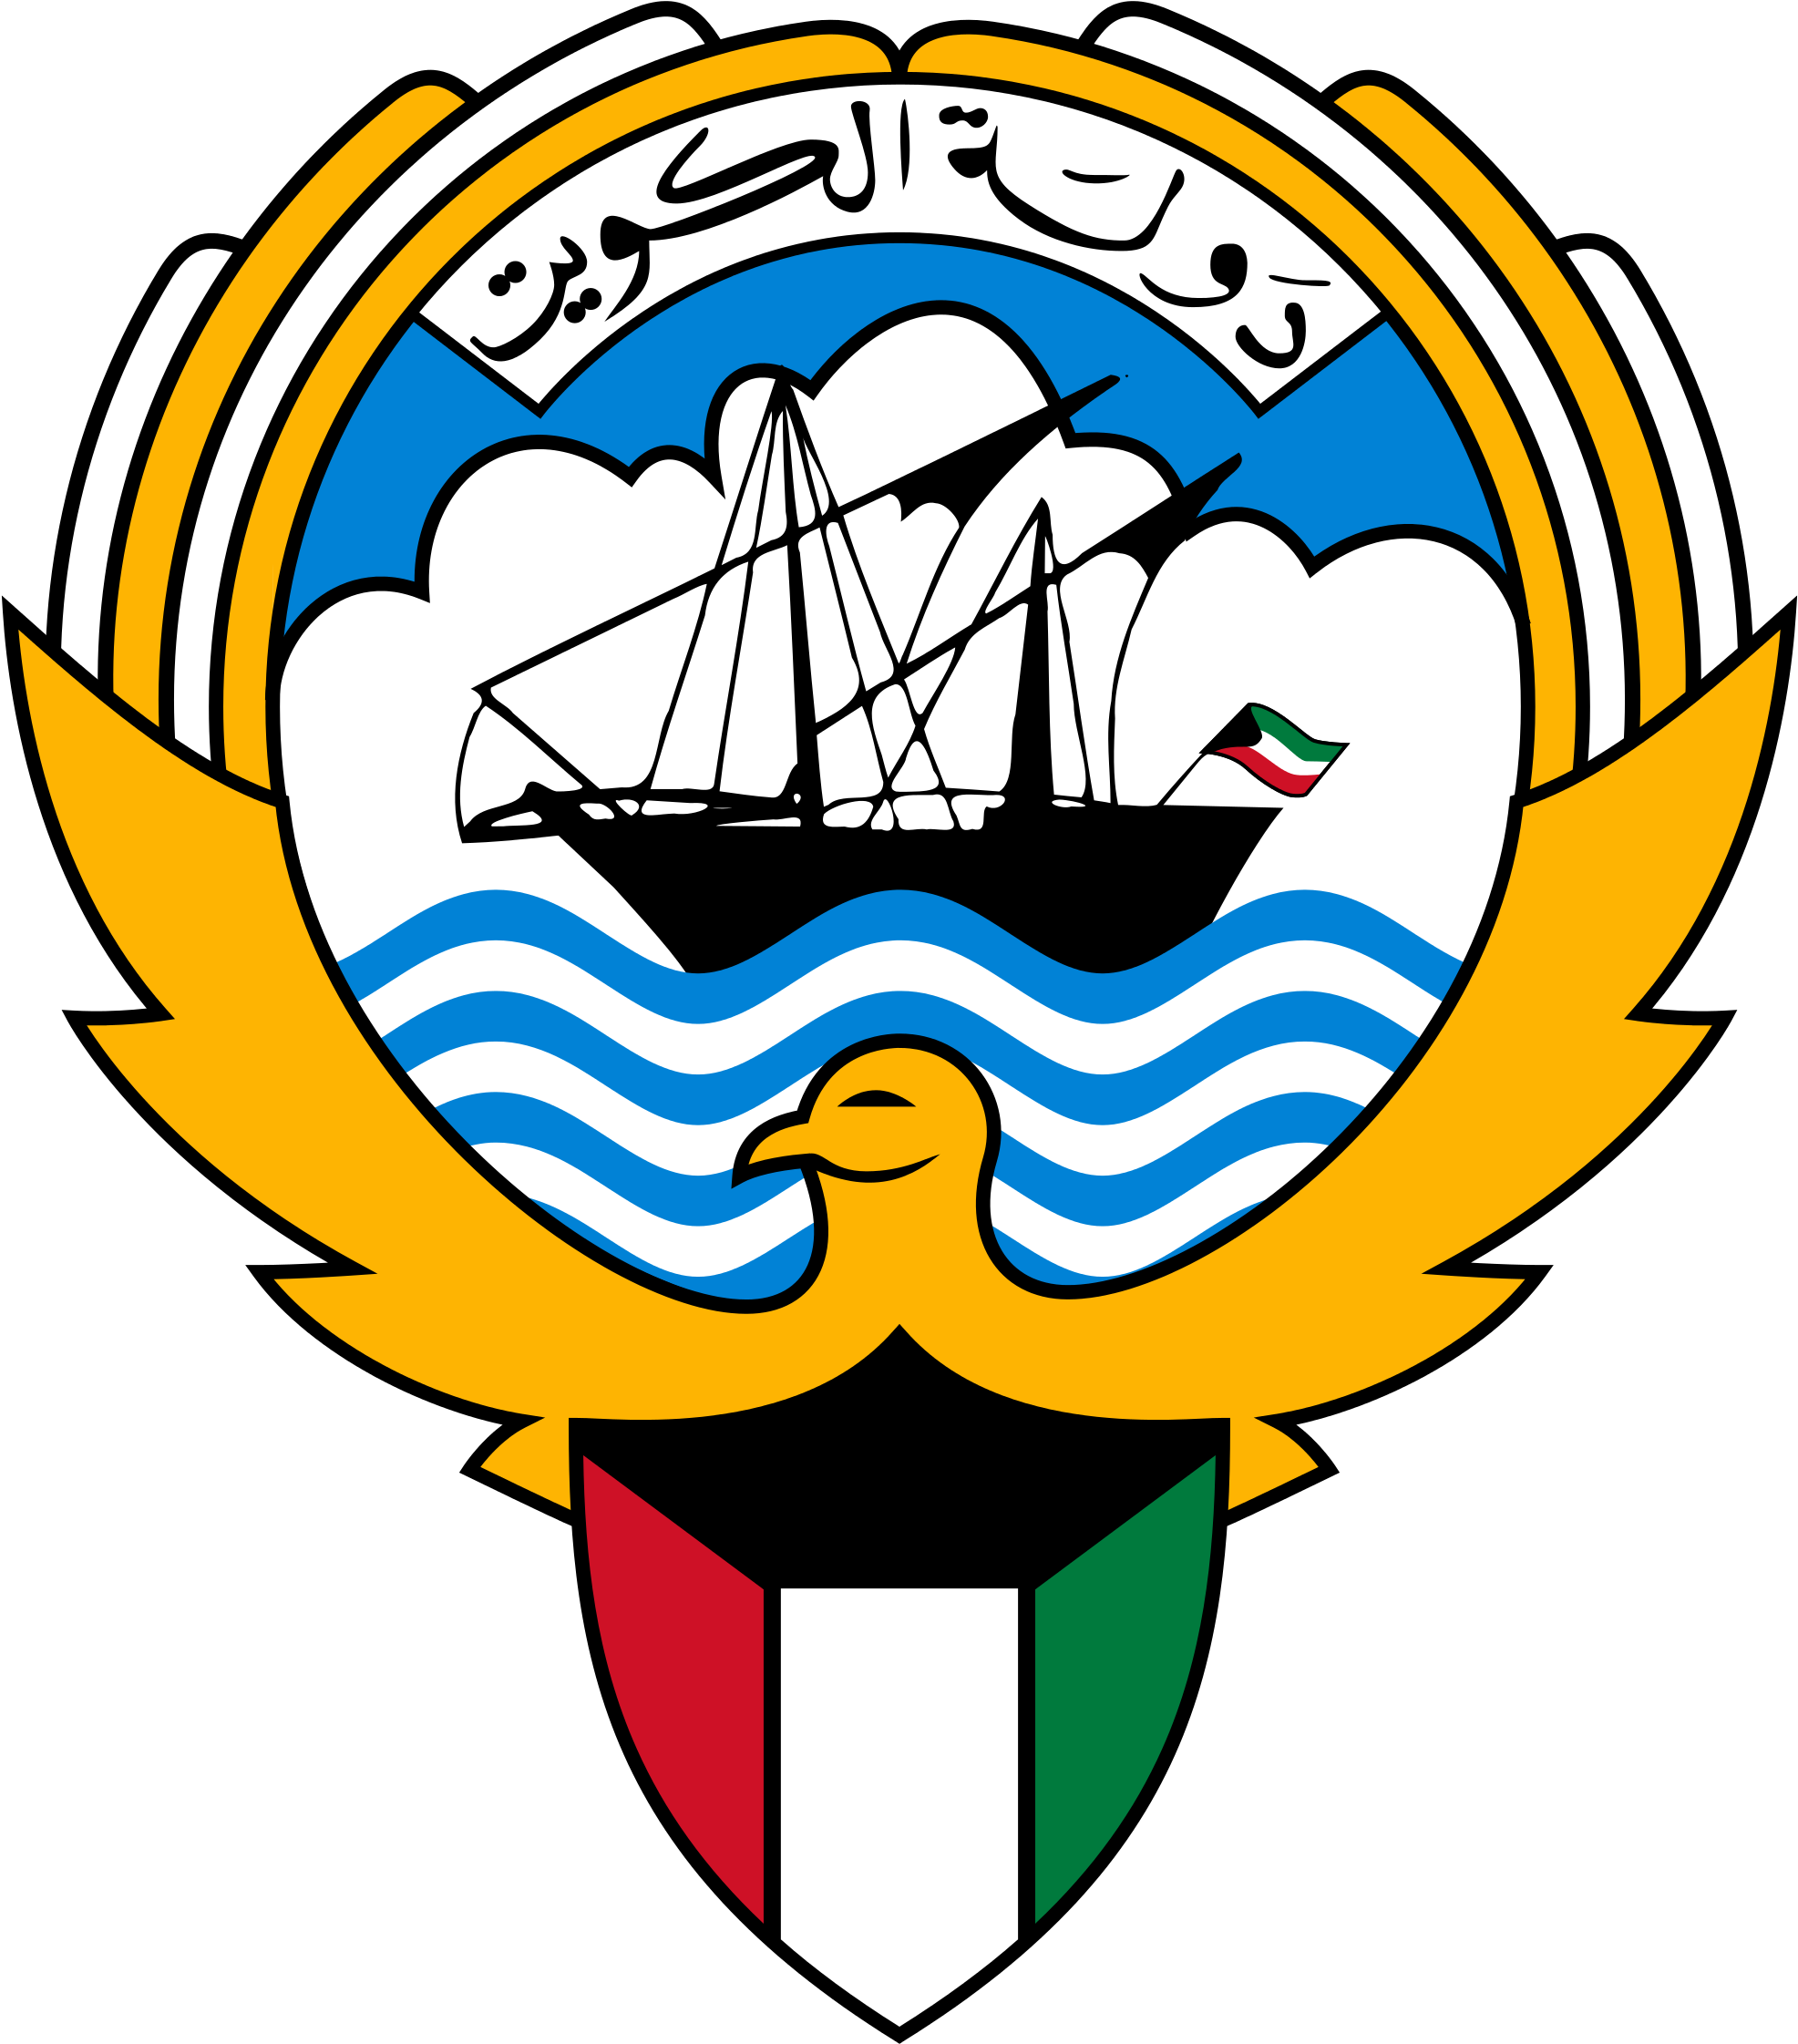 A Logo Of A Ship And A Bird